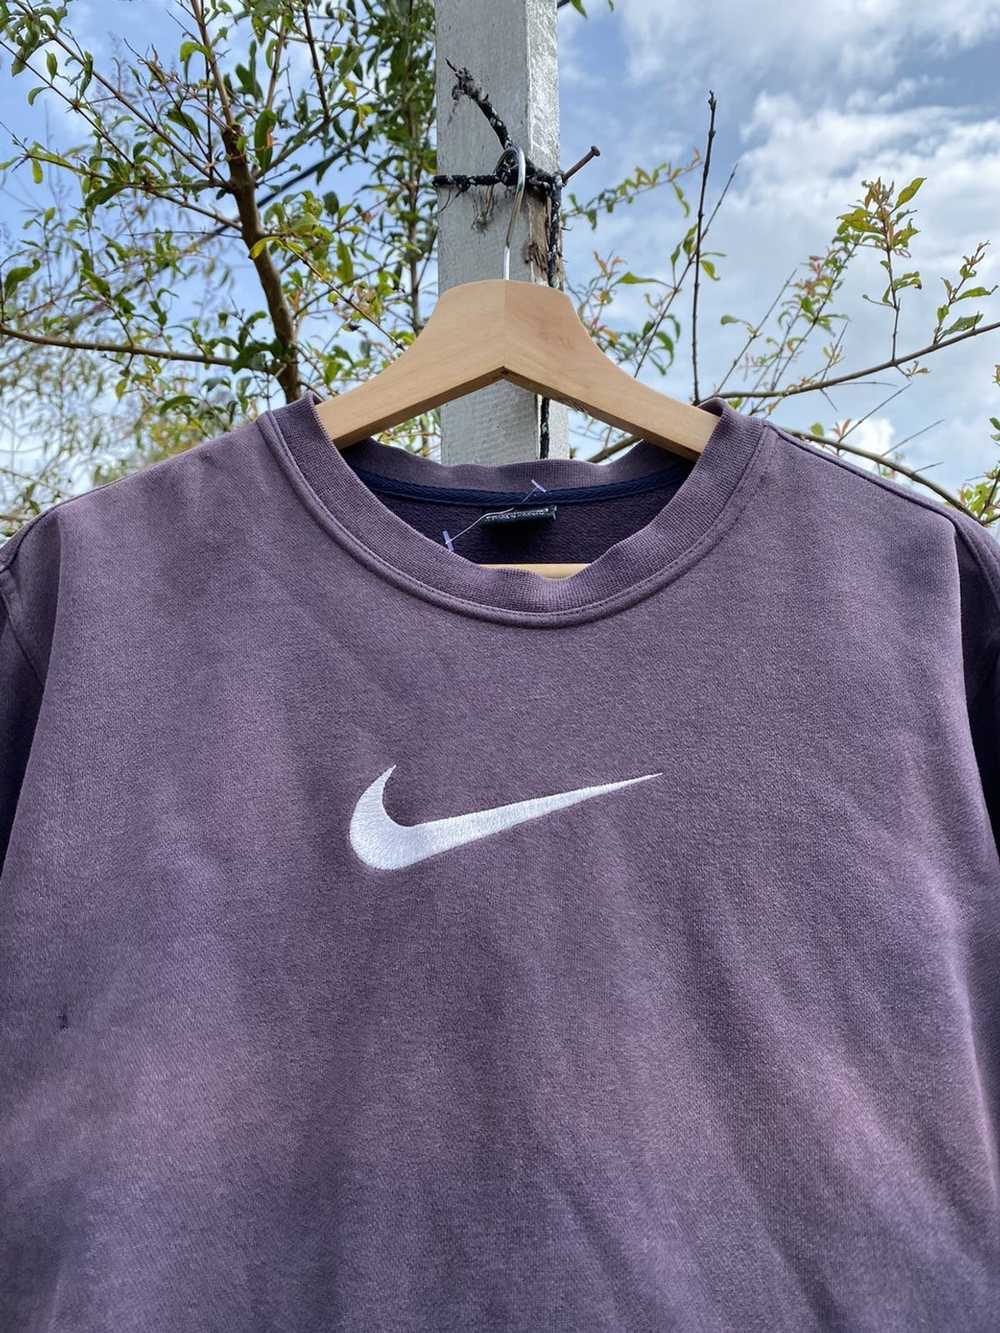 Nike Sweatshirt NIKE very nice faded - image 2